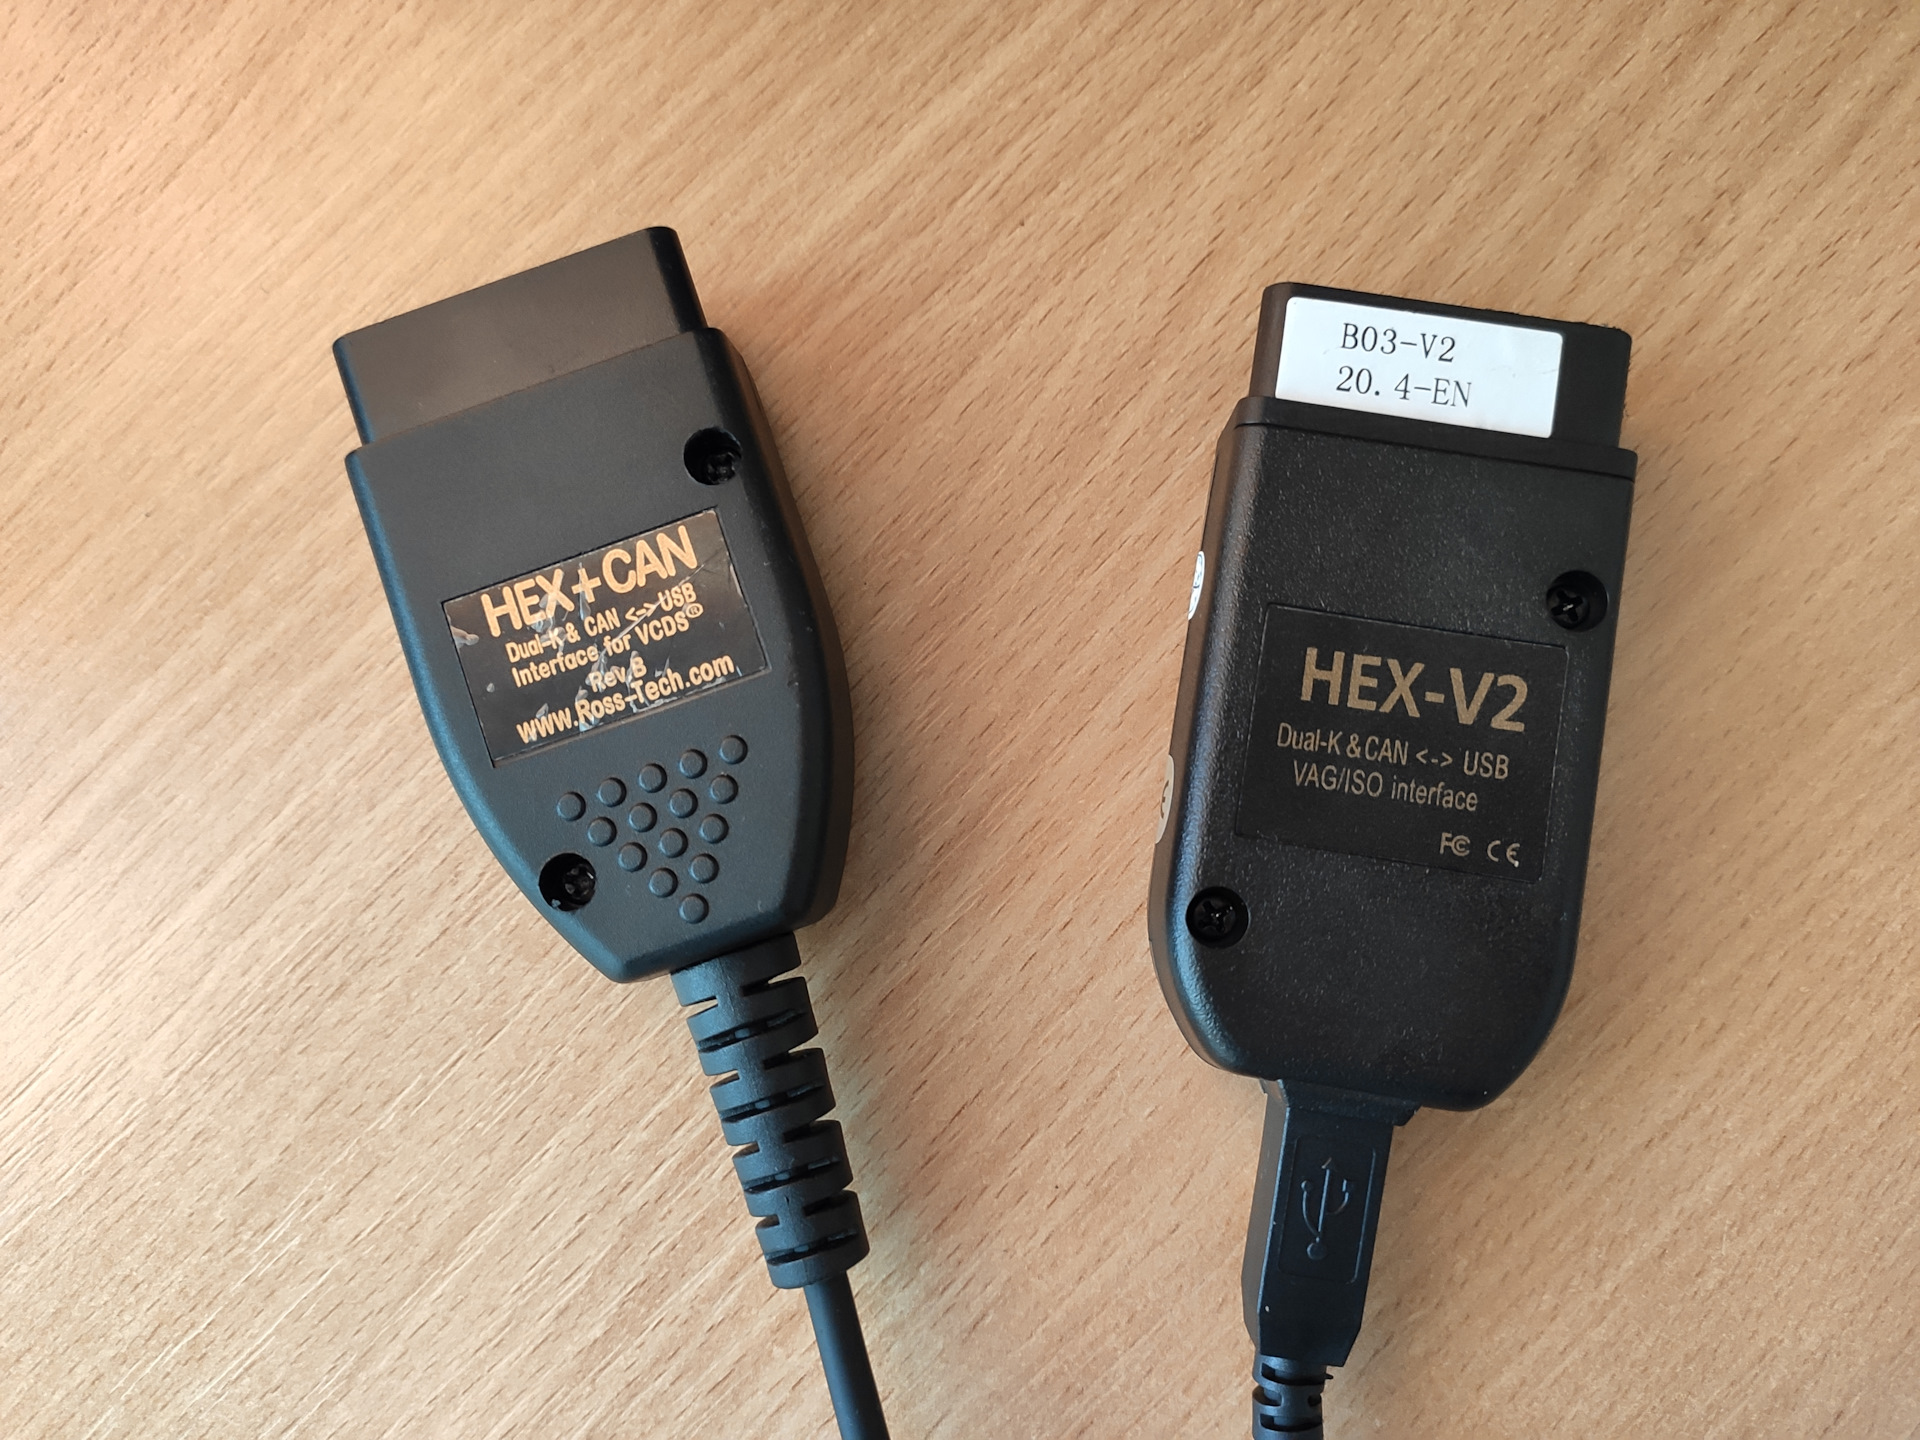 слева старый, справа так называемый HEX-V2. 